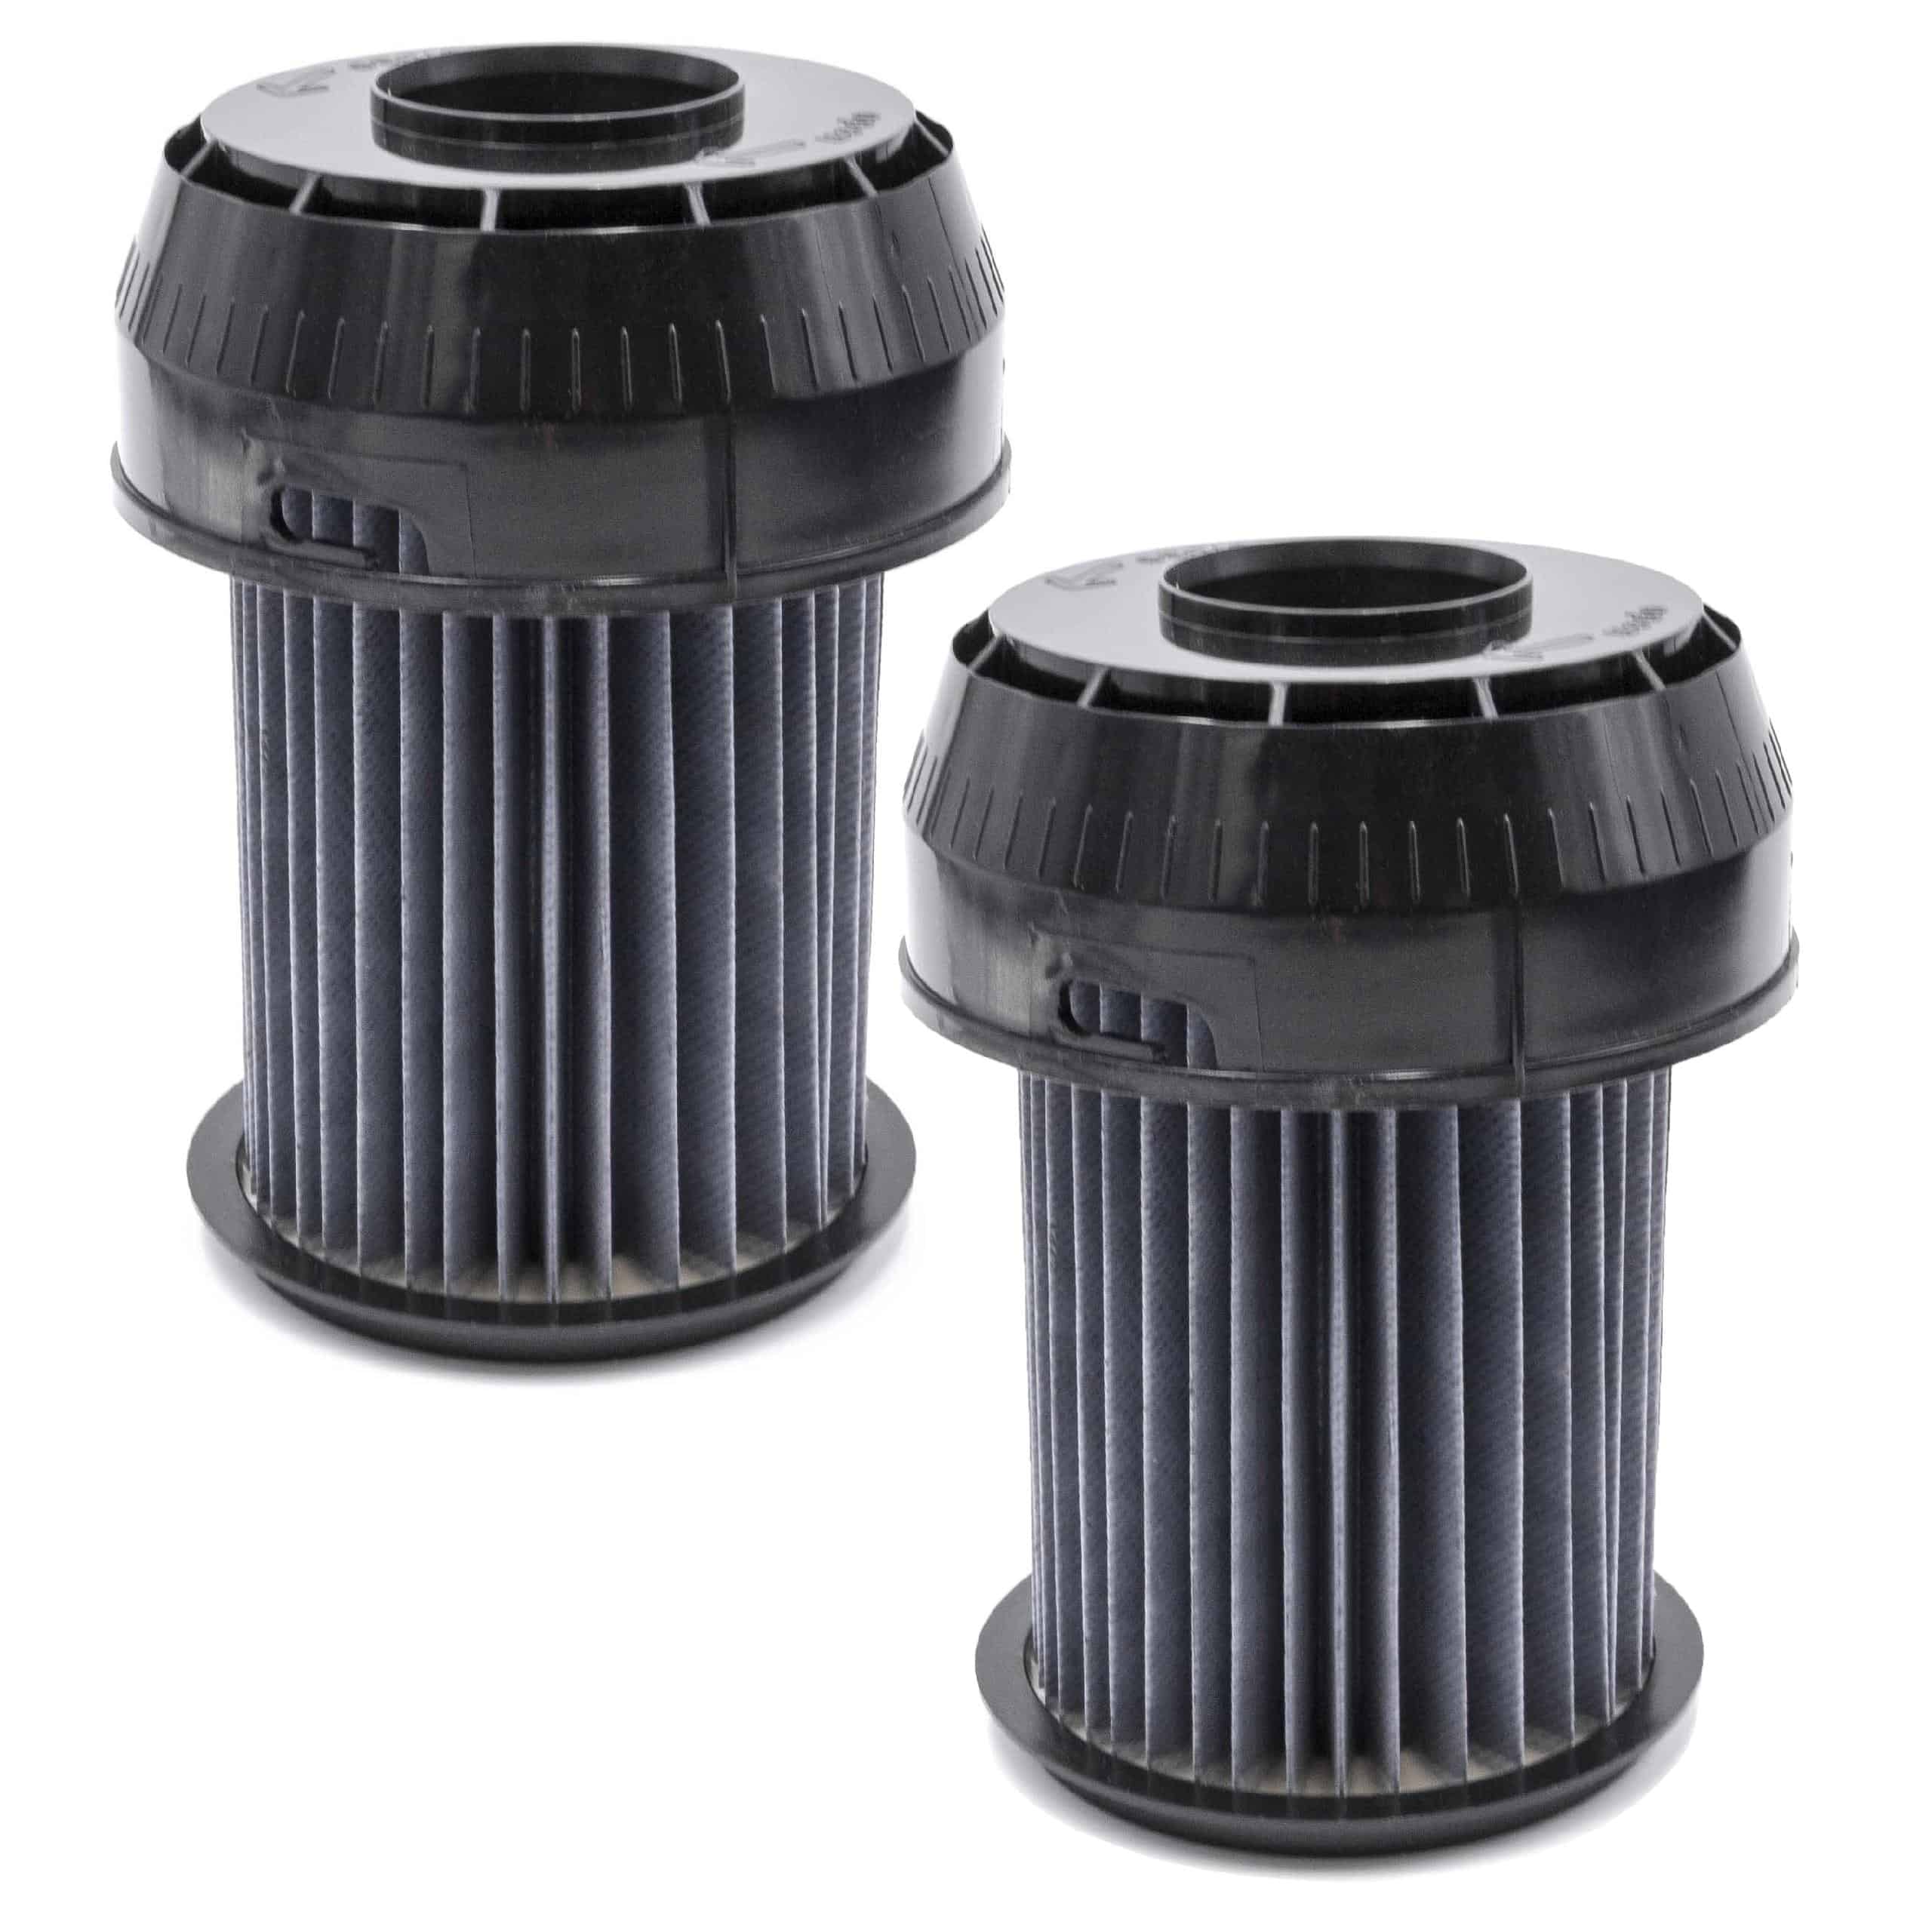 2x Filtre remplace Bosch 2609256d46, 00649841 pour aspirateur - filtre à lamelles